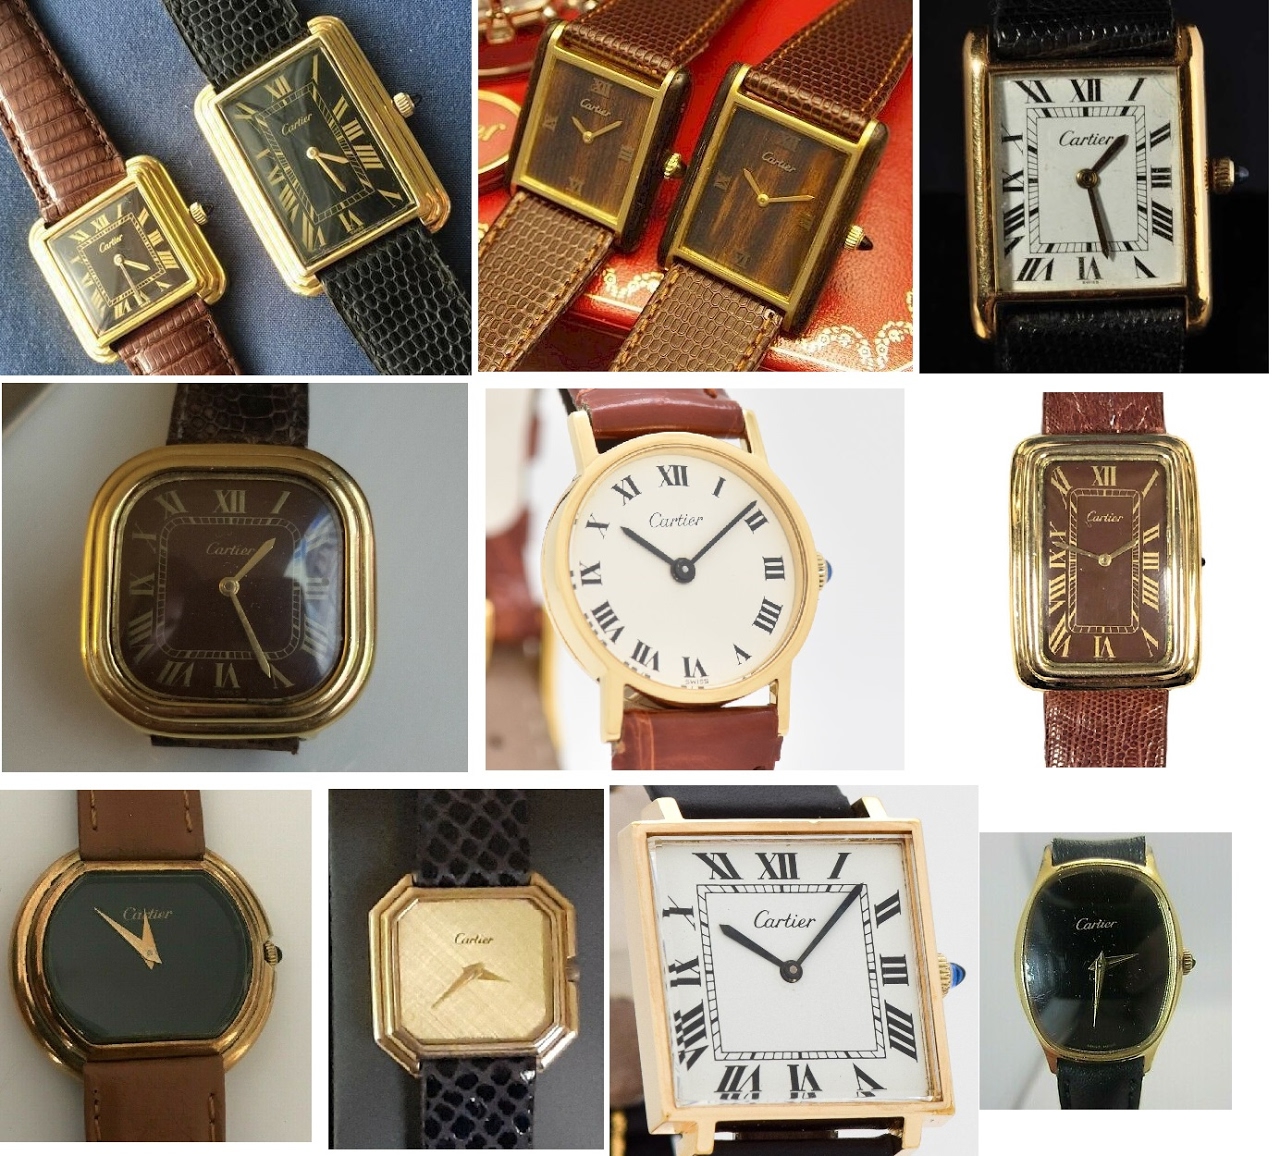 Tank de Cartier watches - all watch models - Cartier